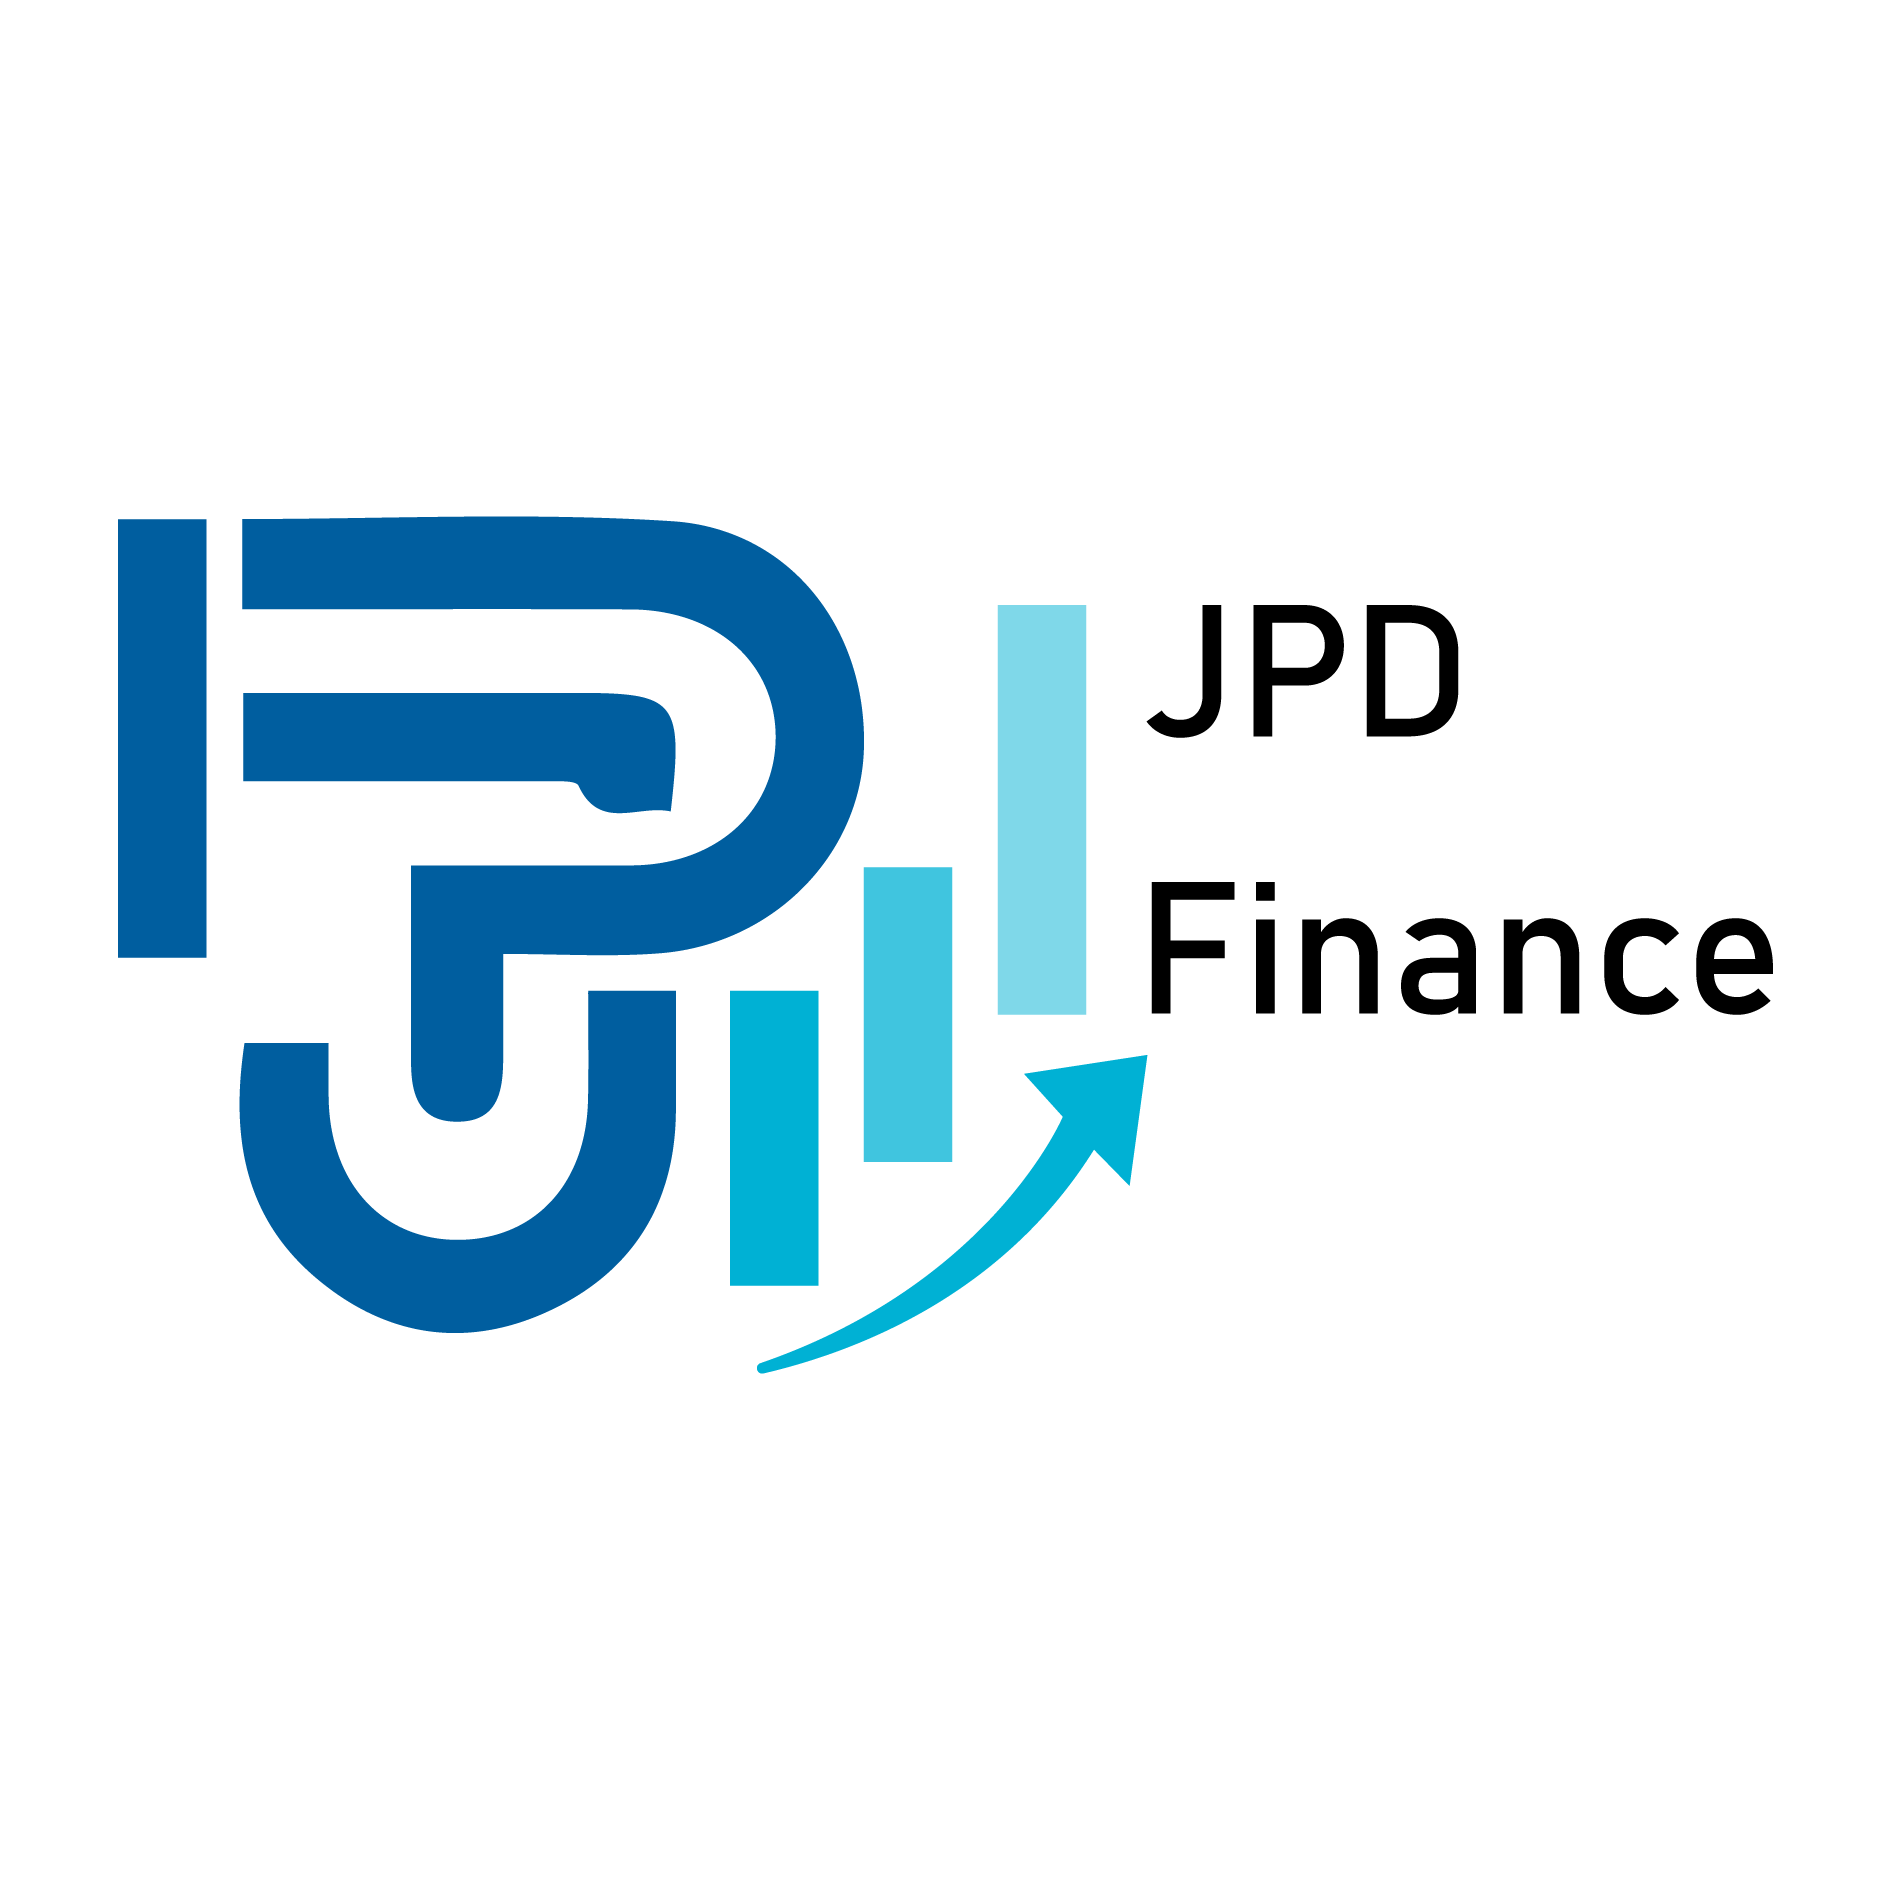 JPDFinance